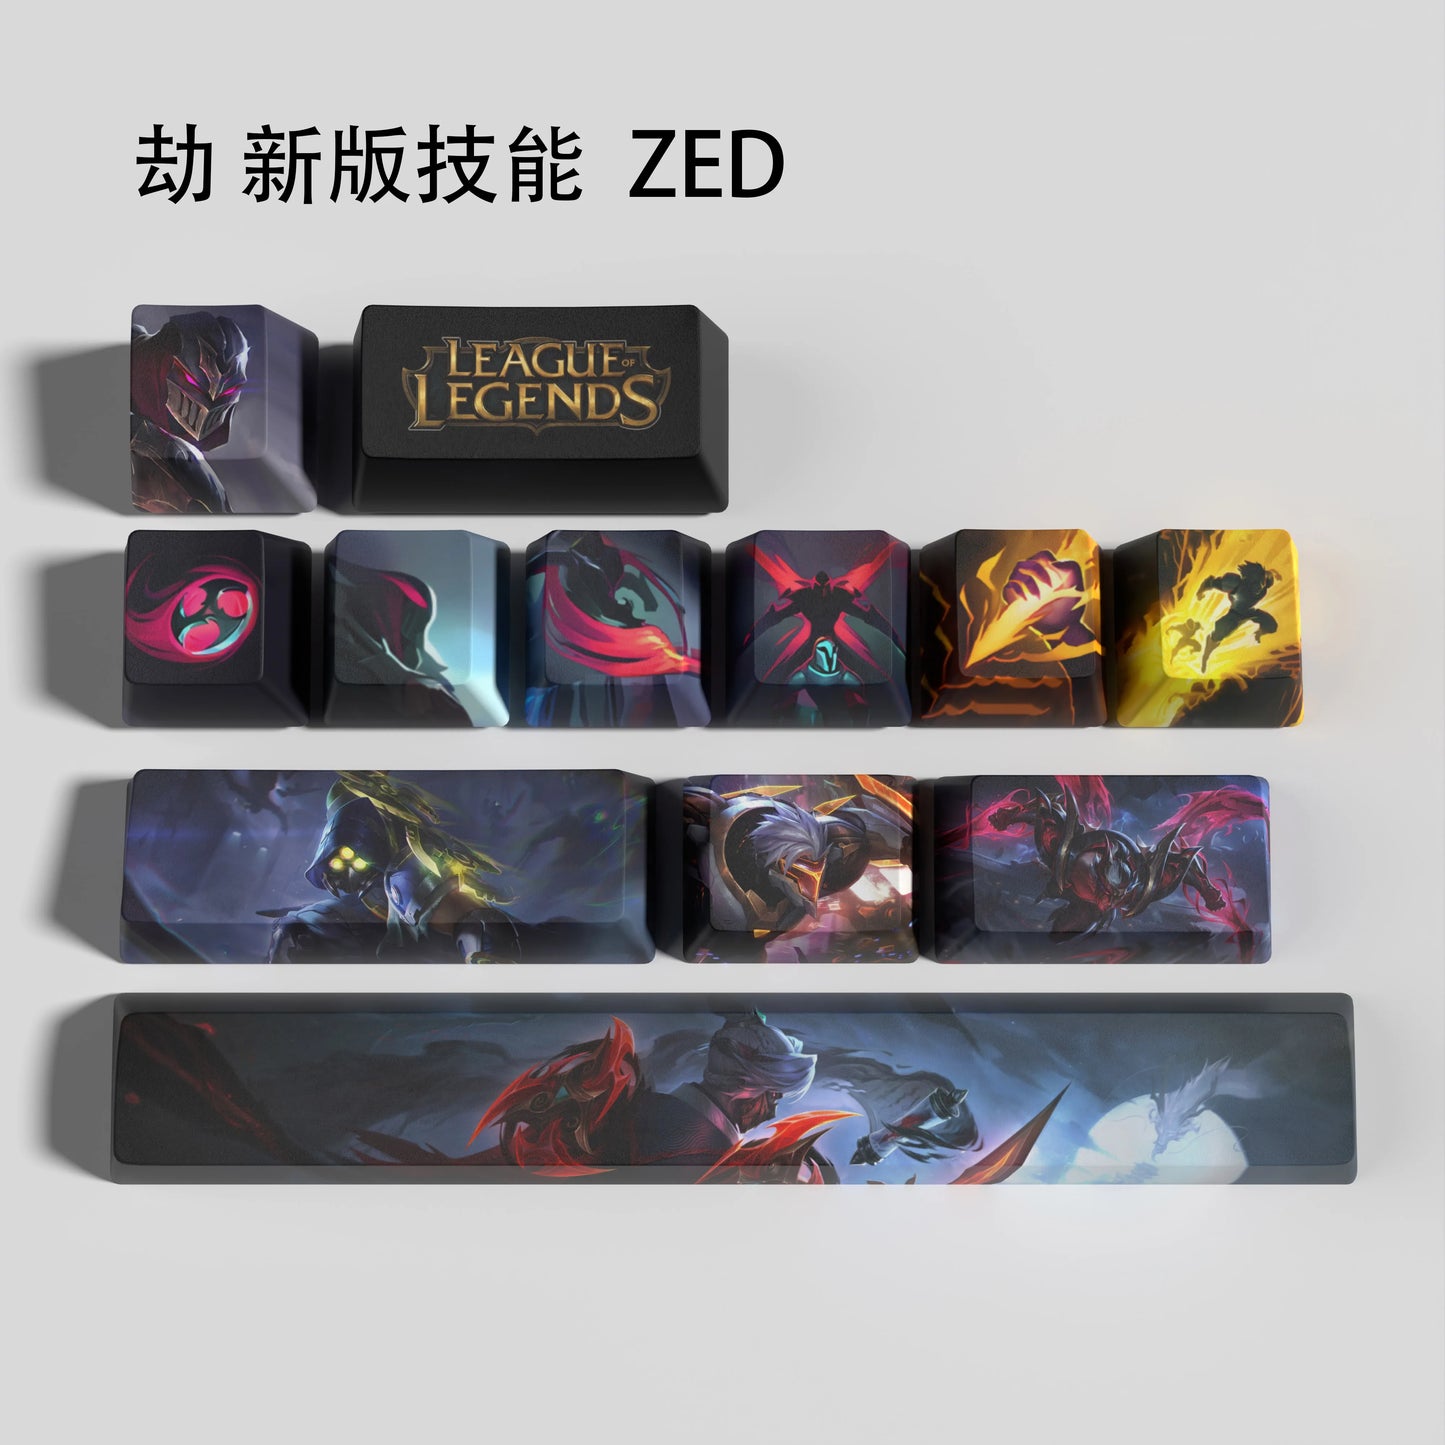 Zed-new keycaps